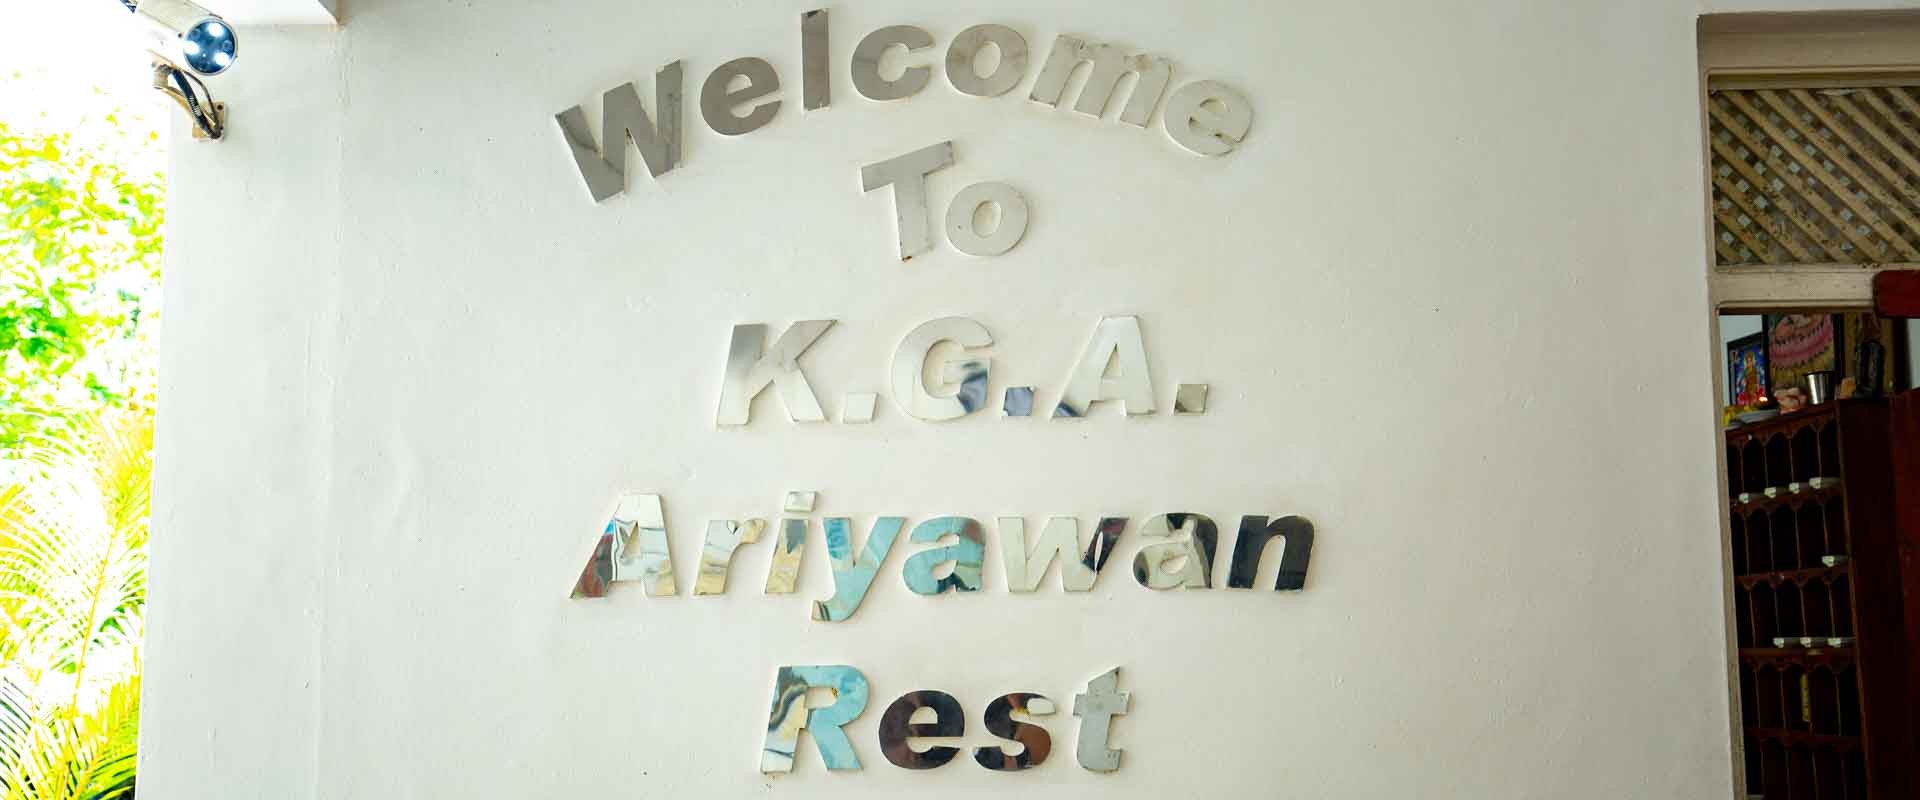 Ariyawan Rest - Gateway to East